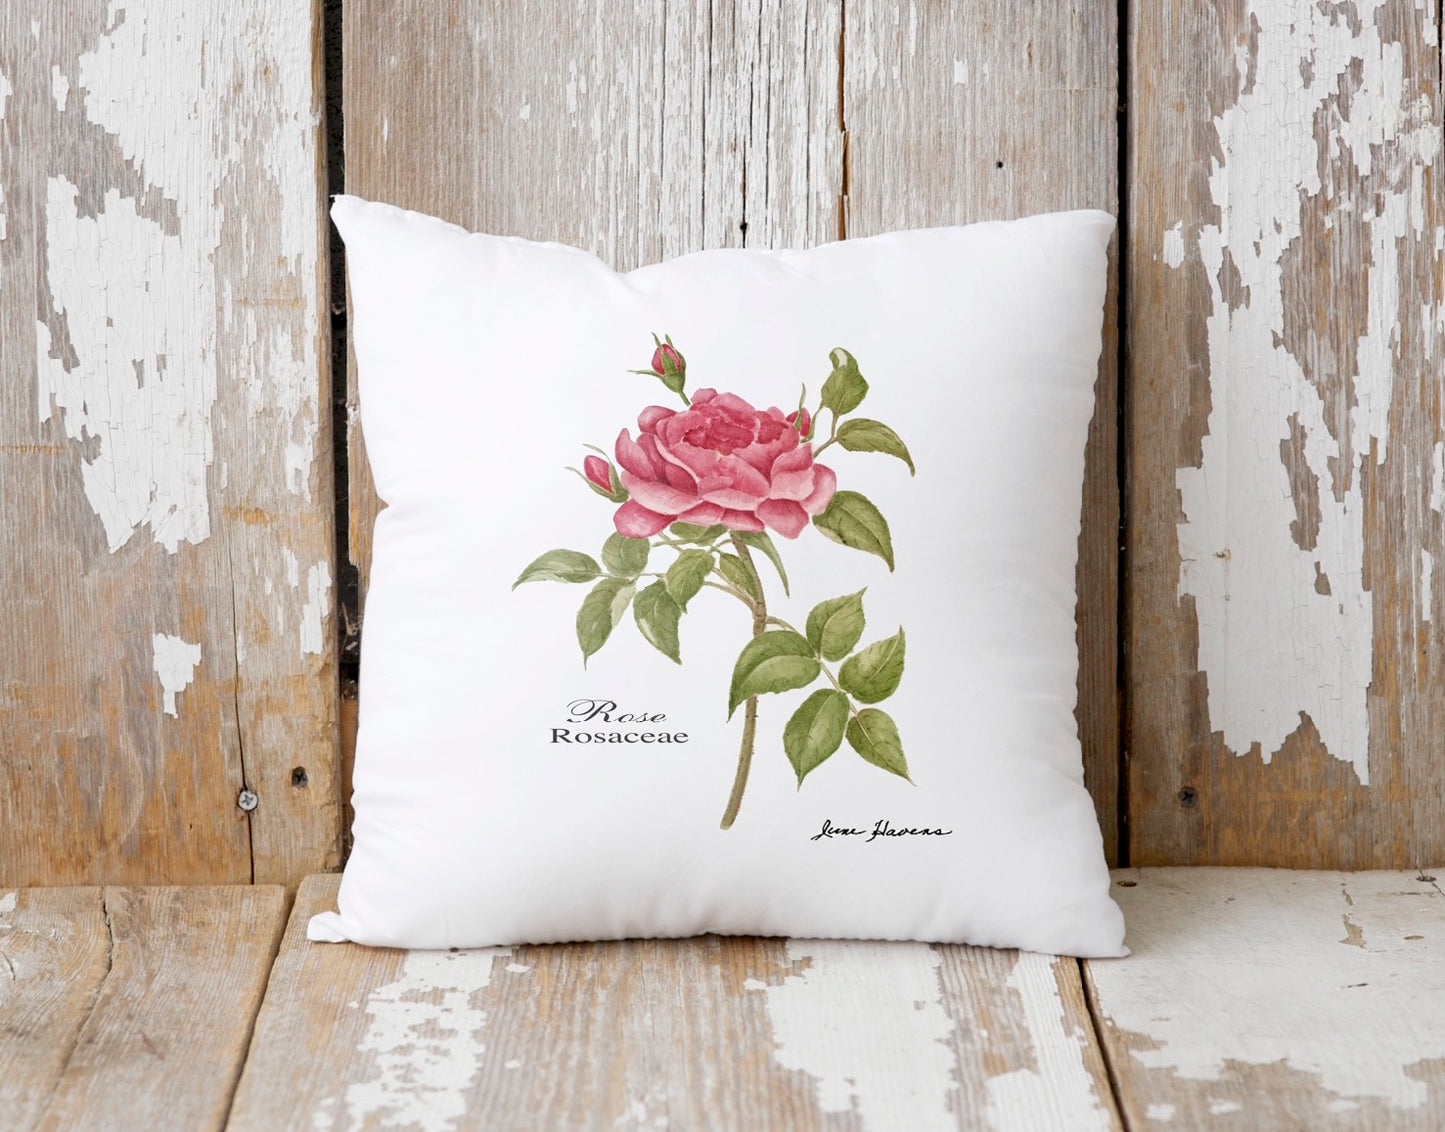 Pink Rose Pillow